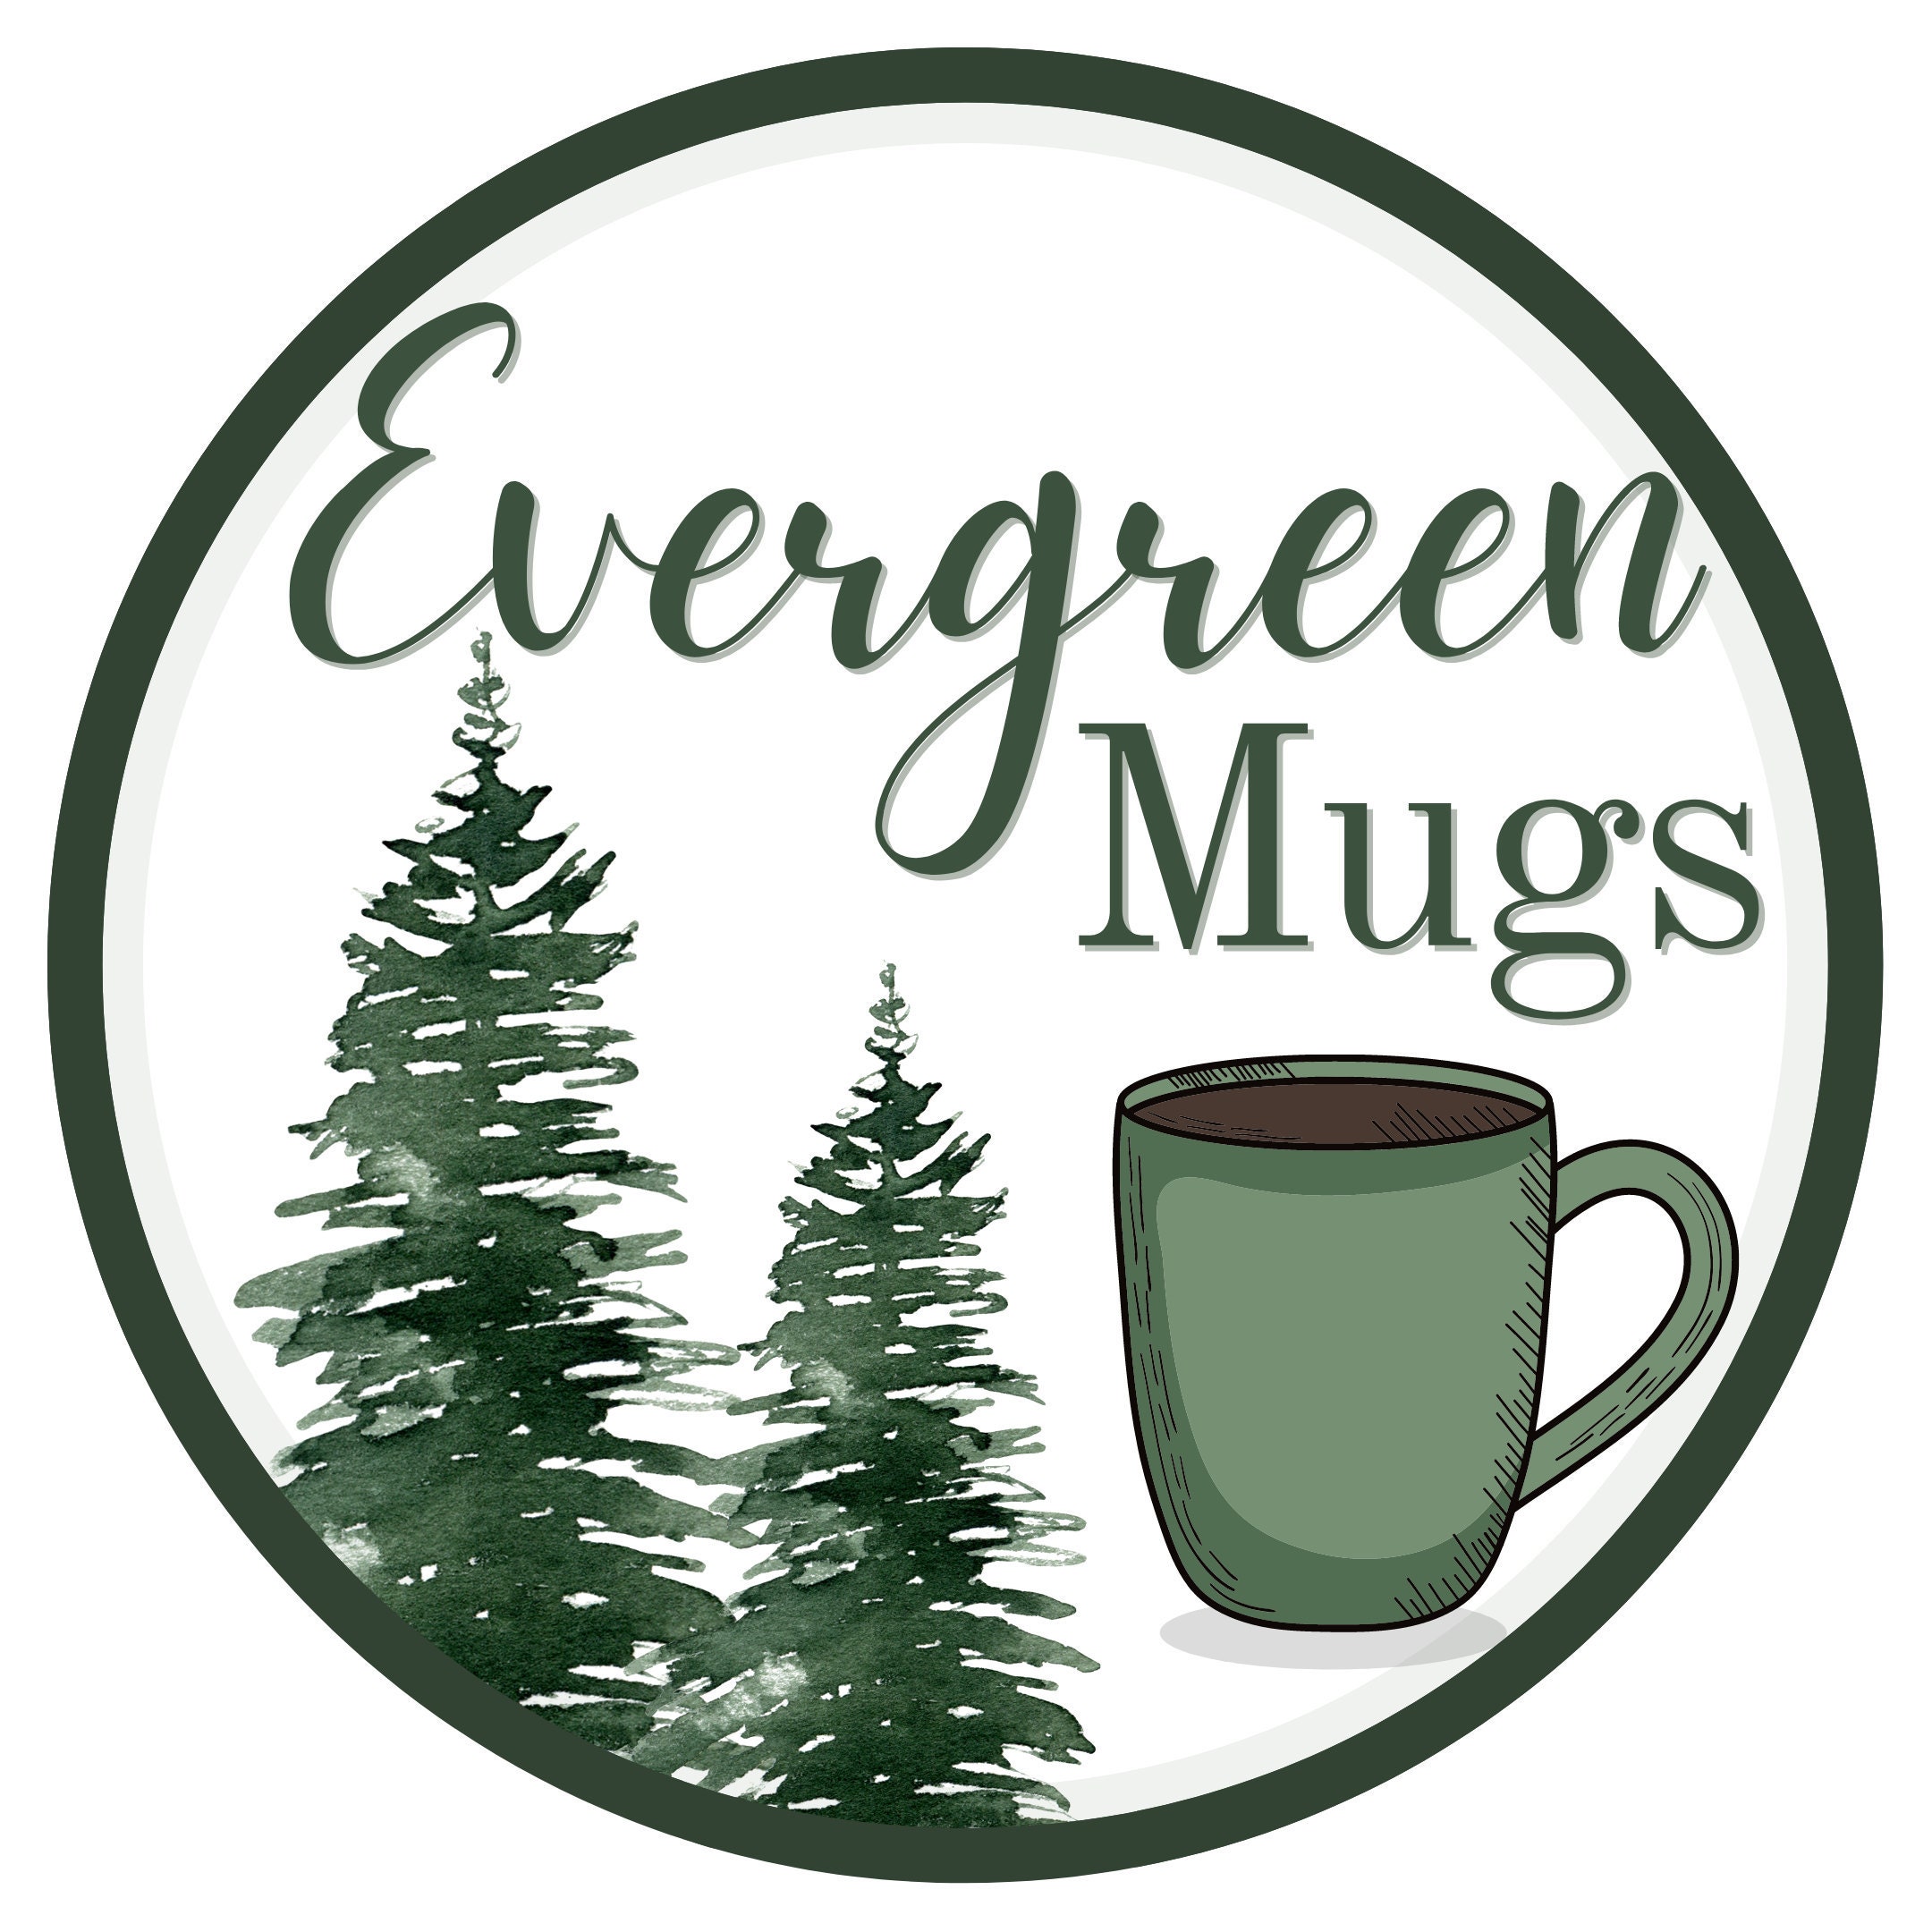 Boob Shapes Mug - Trendy Coffee Mugs, Drinkware, Equality - Femfetti